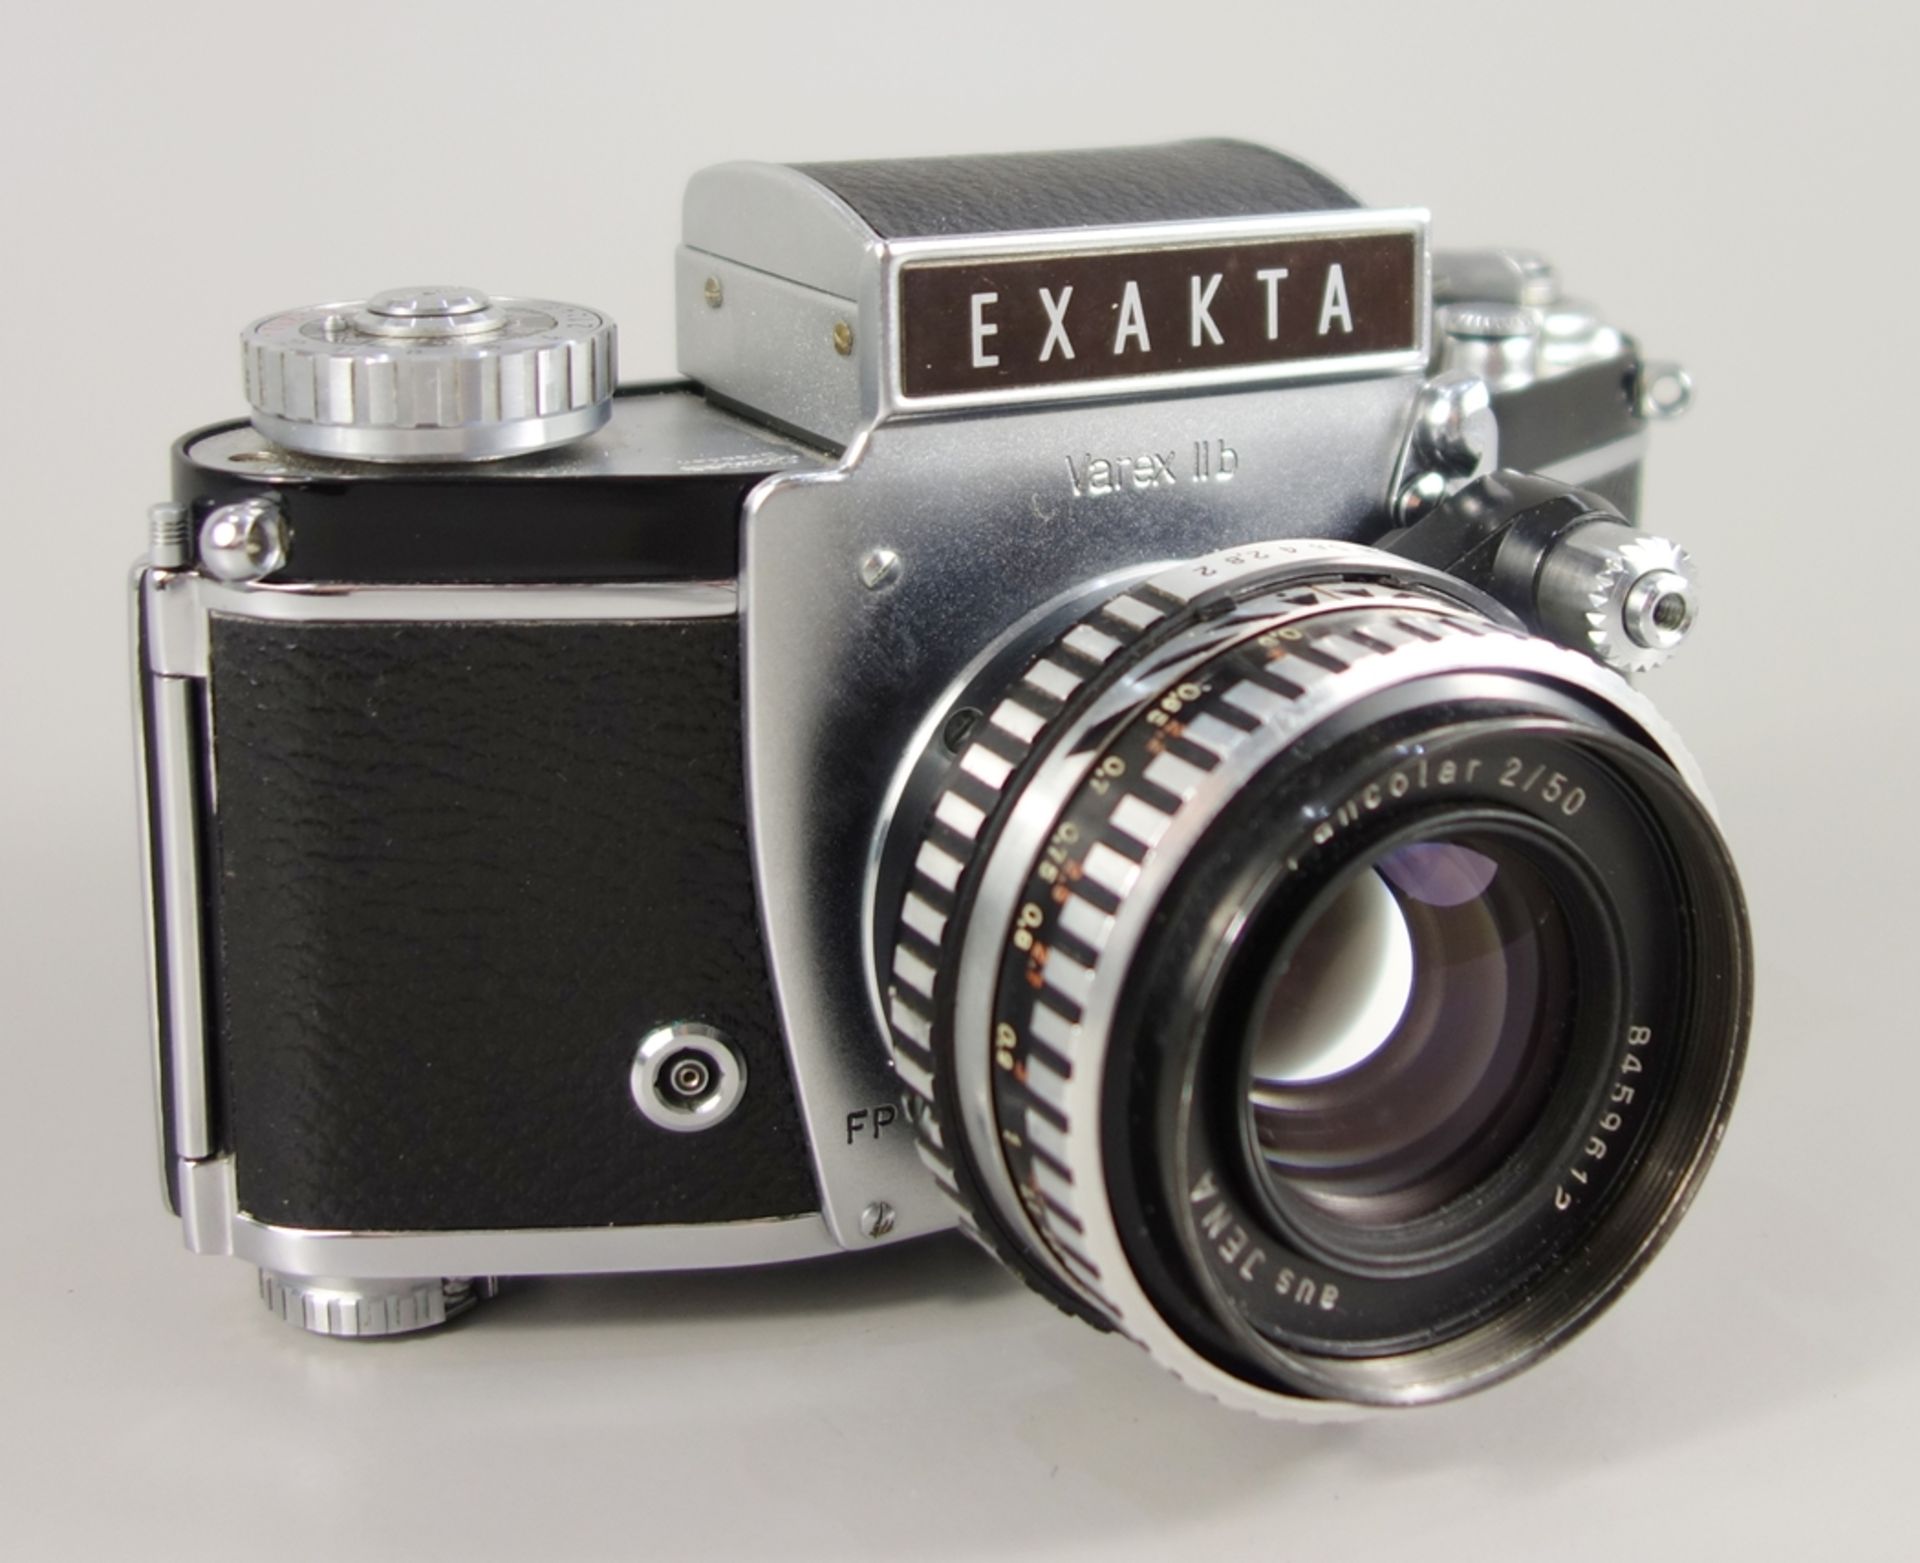 Exakta Varex IIb, Ihagee Dresden, 1963-1967, Kleinbildspiegelreflexkamera, Serien-Nr. 1113304, mit